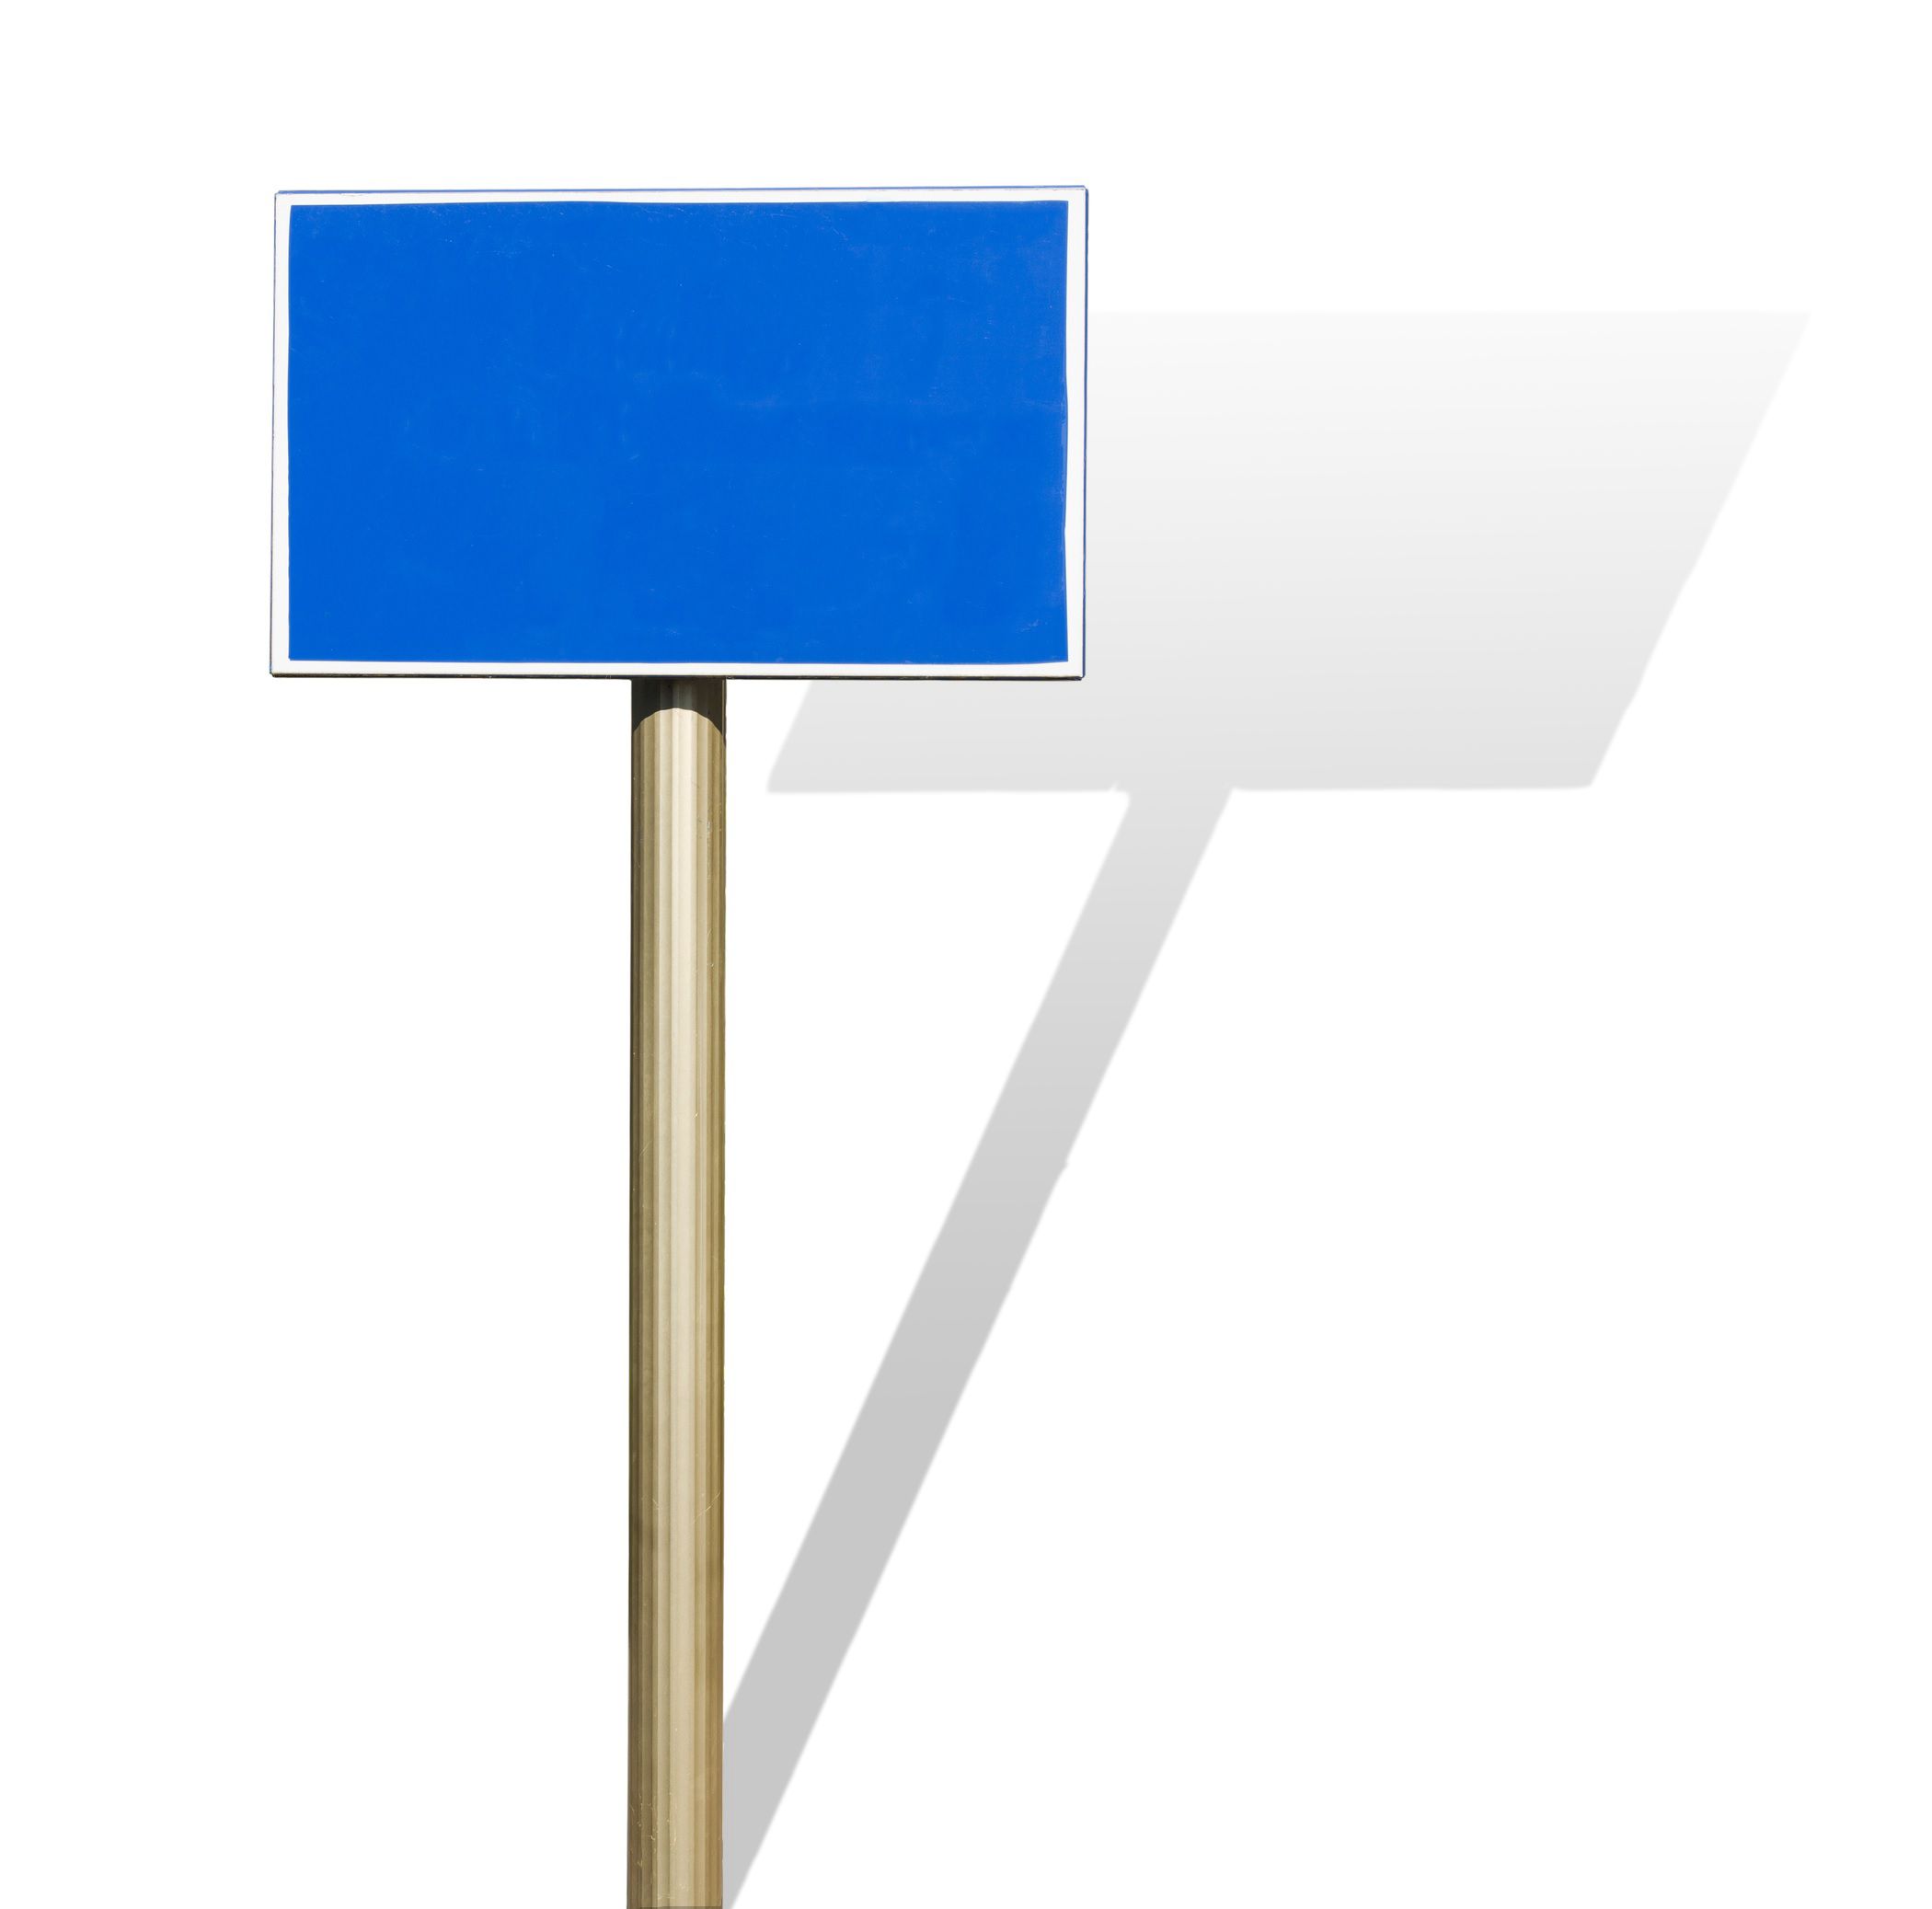 Ett blått tecken på en stolpe kastar en skugga på en vit bakgrund.